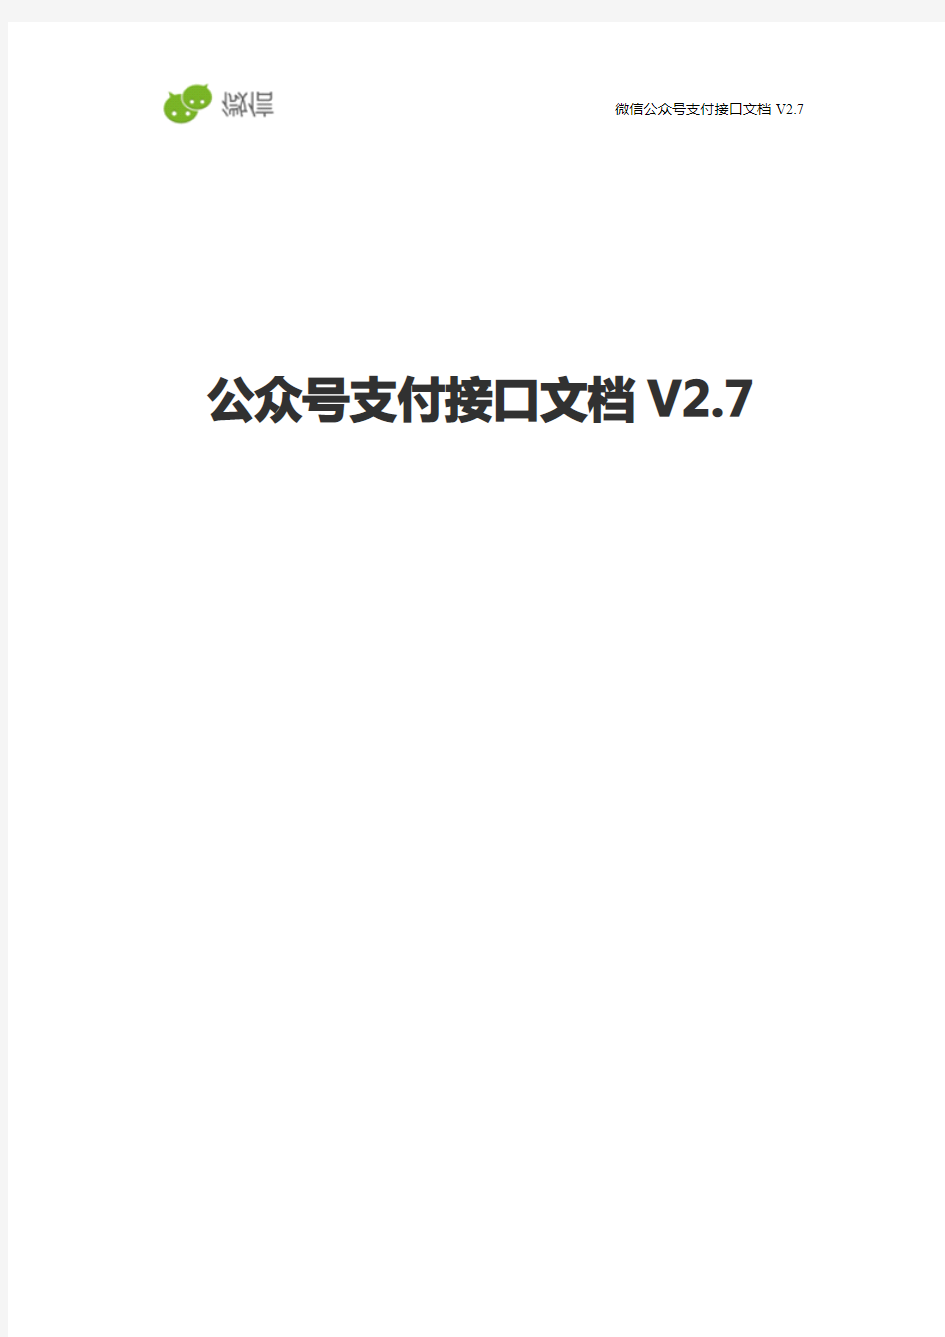 【微信支付】公众号支付接口文档V2.7